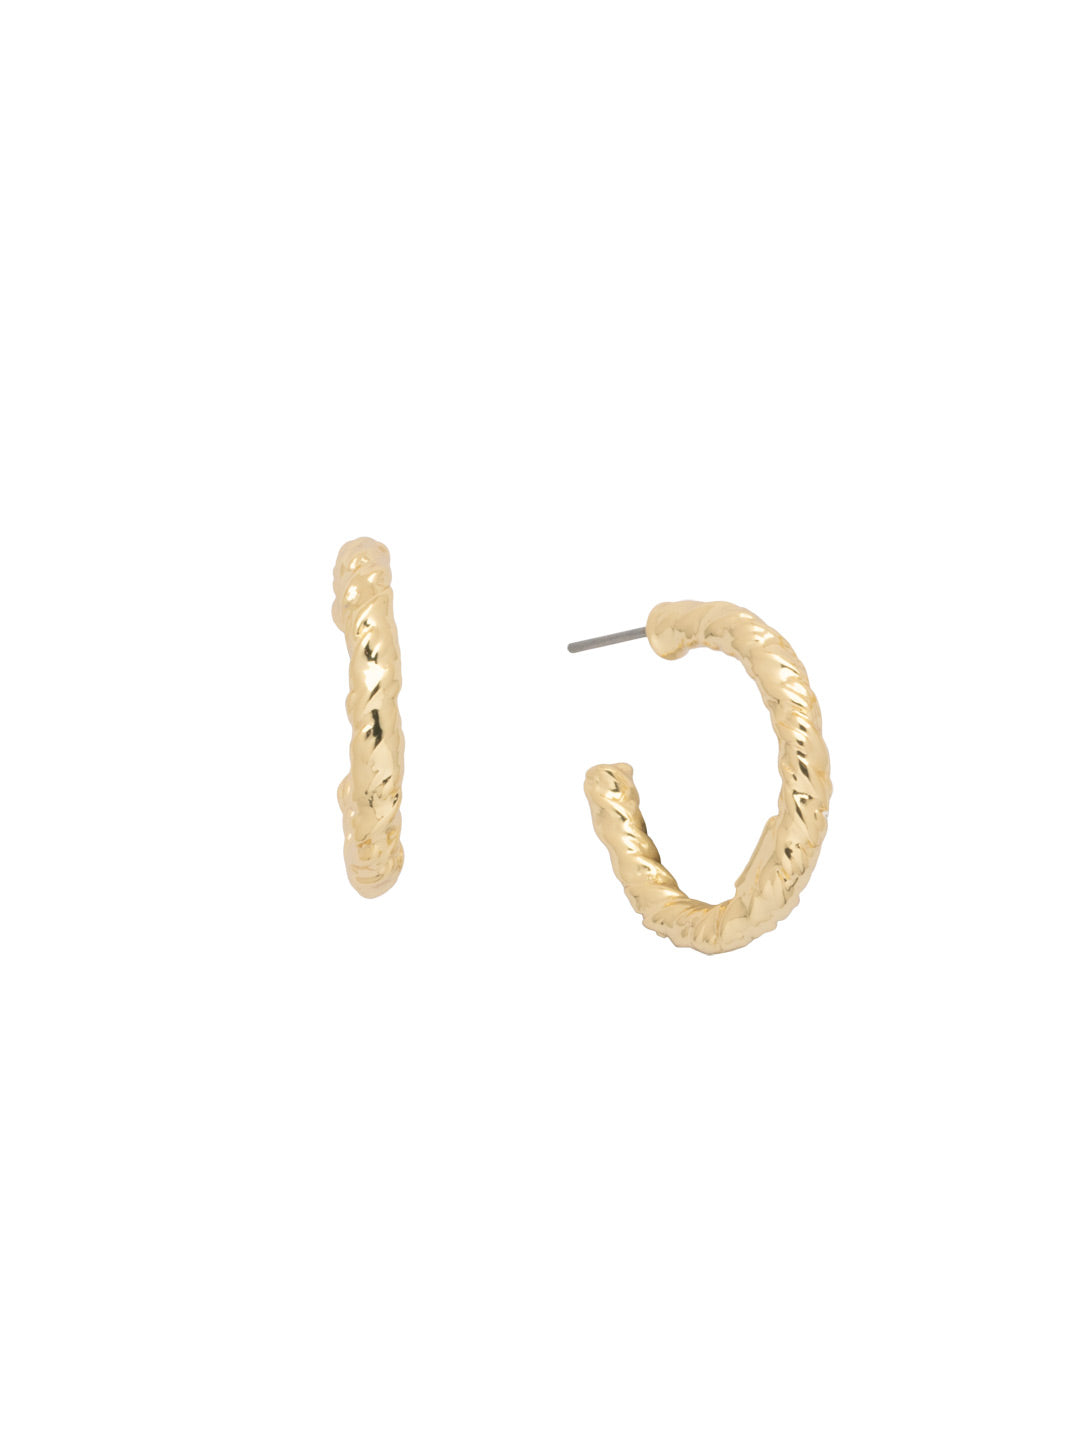 Olive Hoop Earrings - 4EFJ13BGMTL